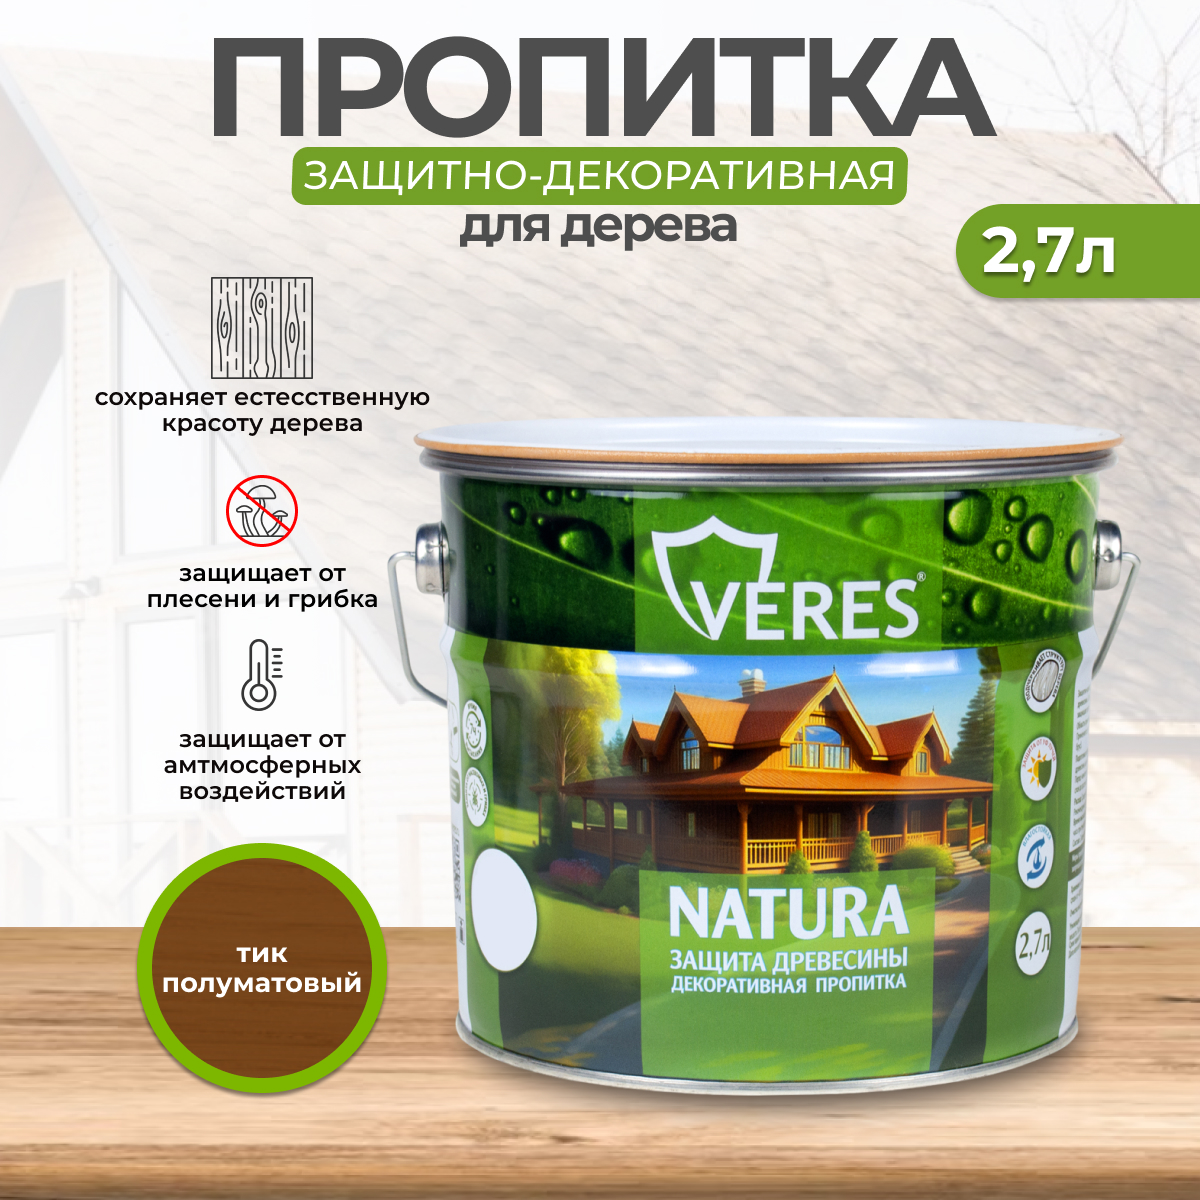 Декоративная пропитка для дерева Veres Natura полуматовая 2 7 л тик, VR-129